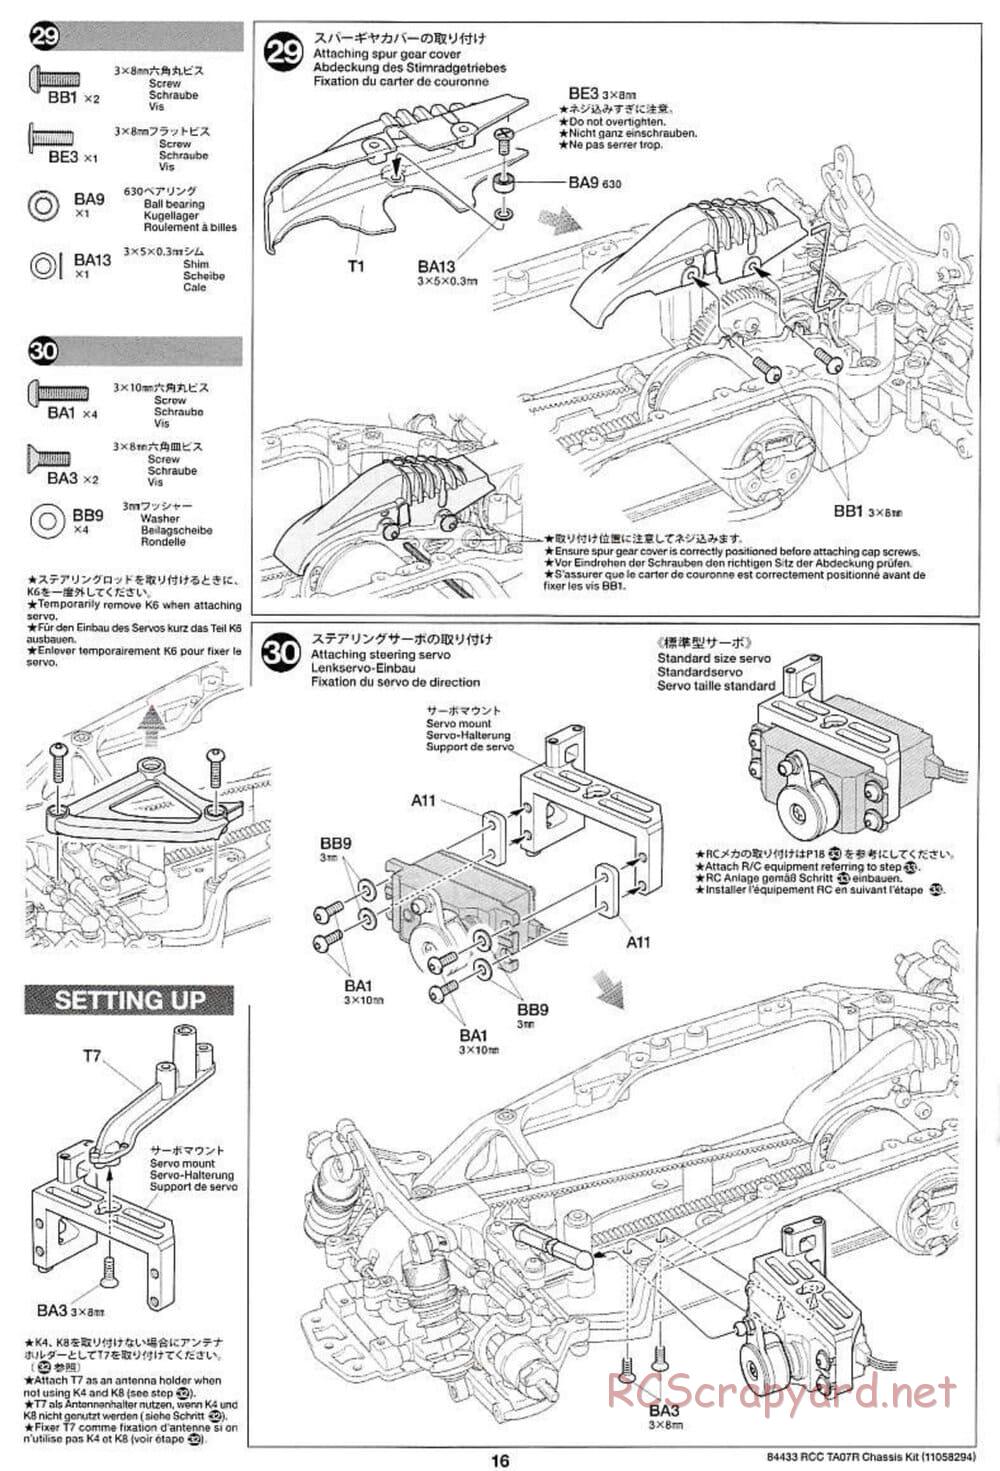 Tamiya - TA07 R Chassis - Manual - Page 16